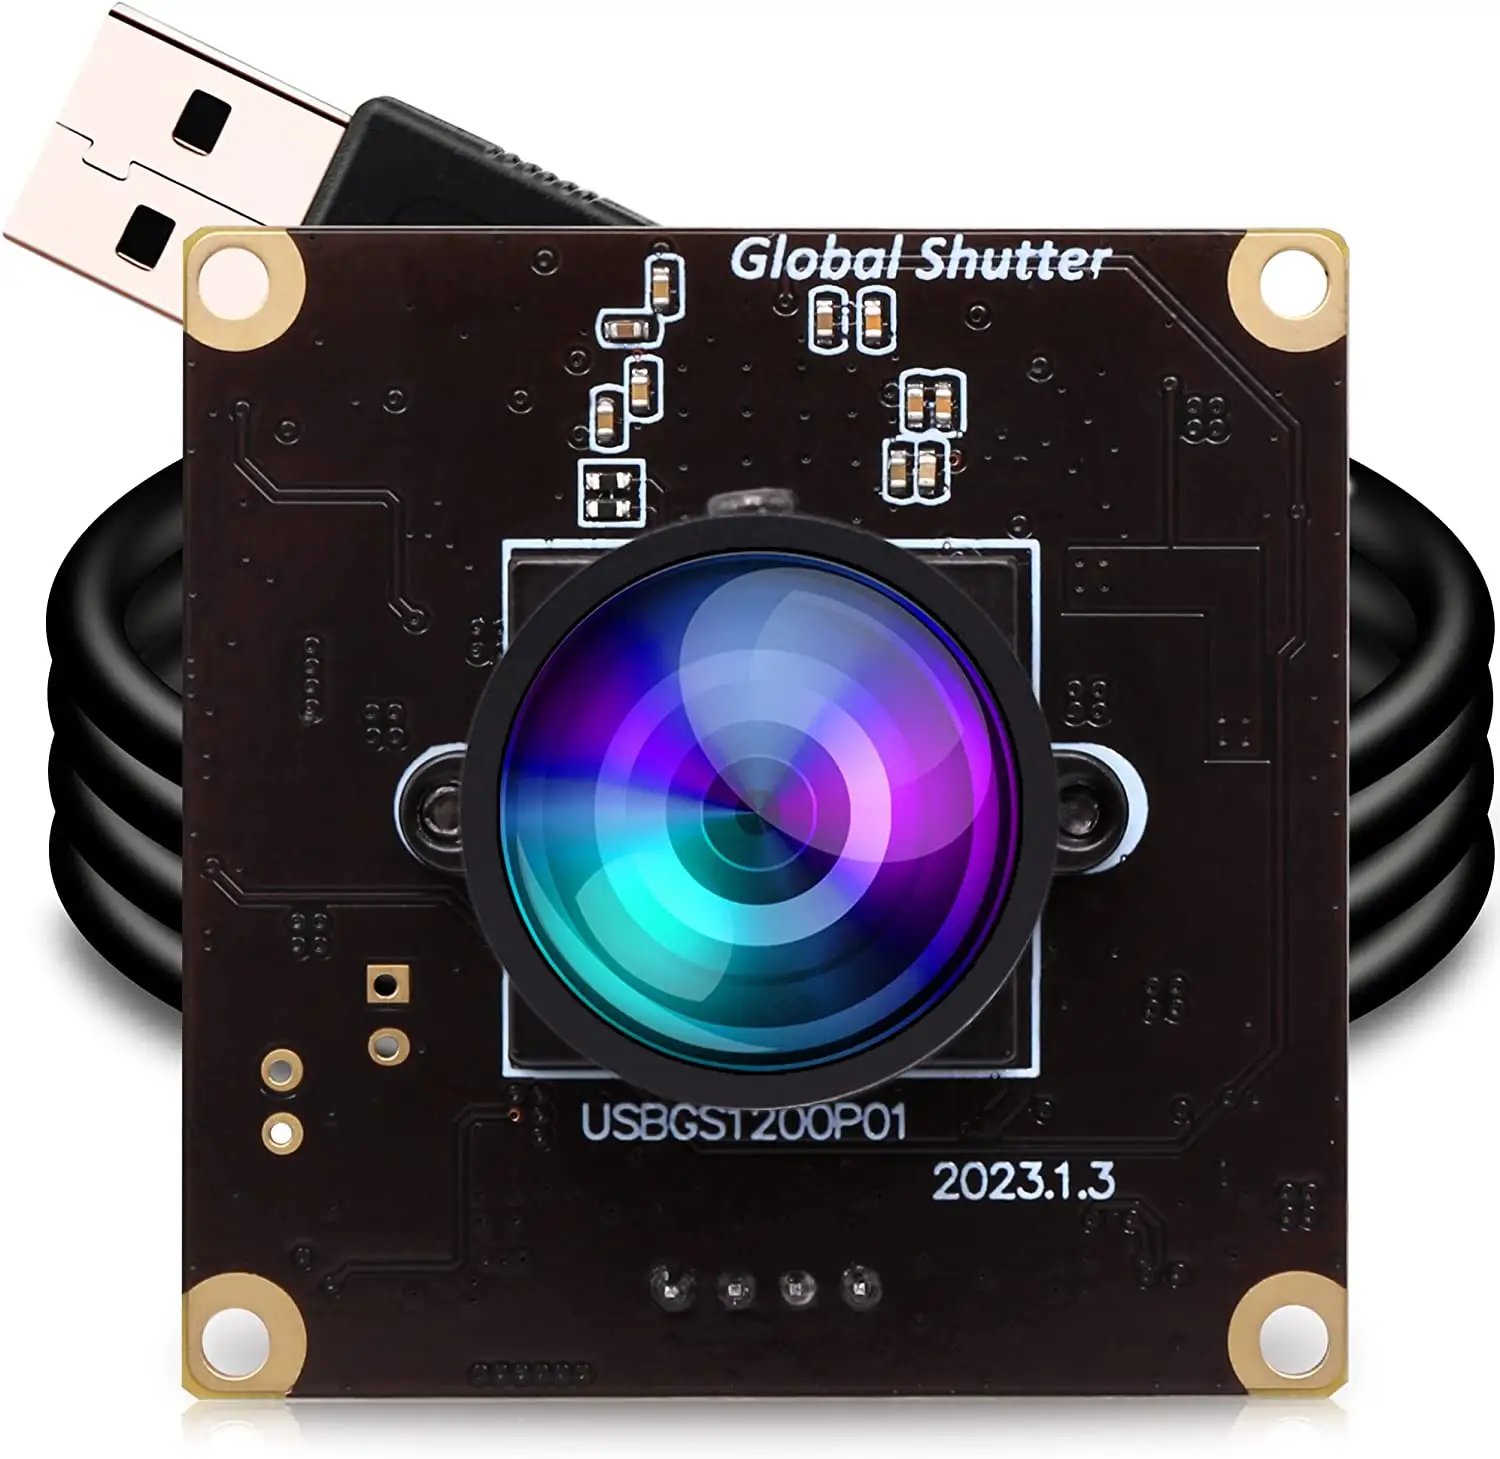 ELP Shutter Global kecepatan tinggi, papan kamera USB dengan lensa sudut lebar 2.1mm 2MP AR0234 90fps USB Web PC untuk komputer